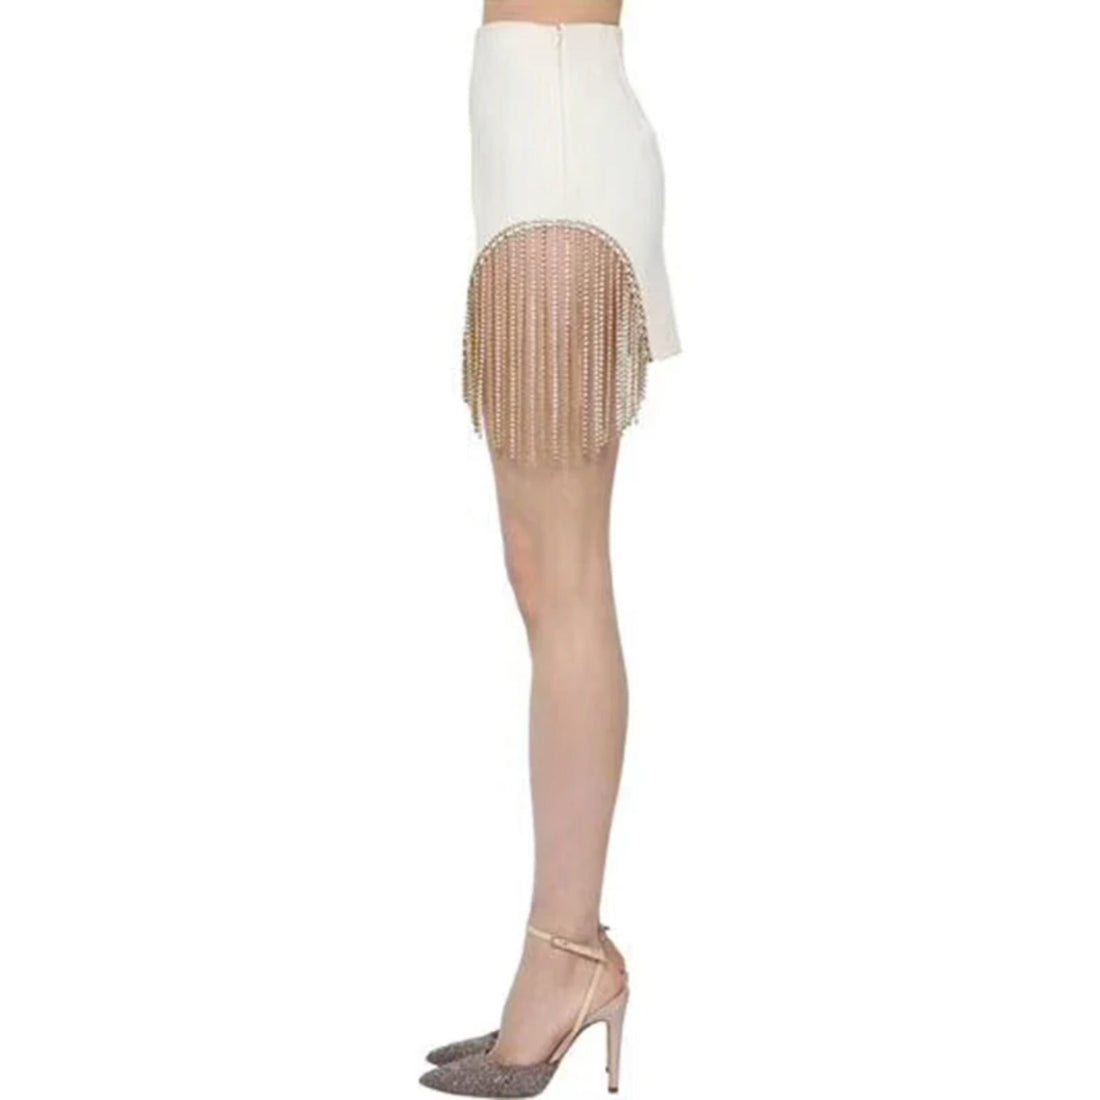 Women's Summer High-Waist Mini Skirt With Tassels